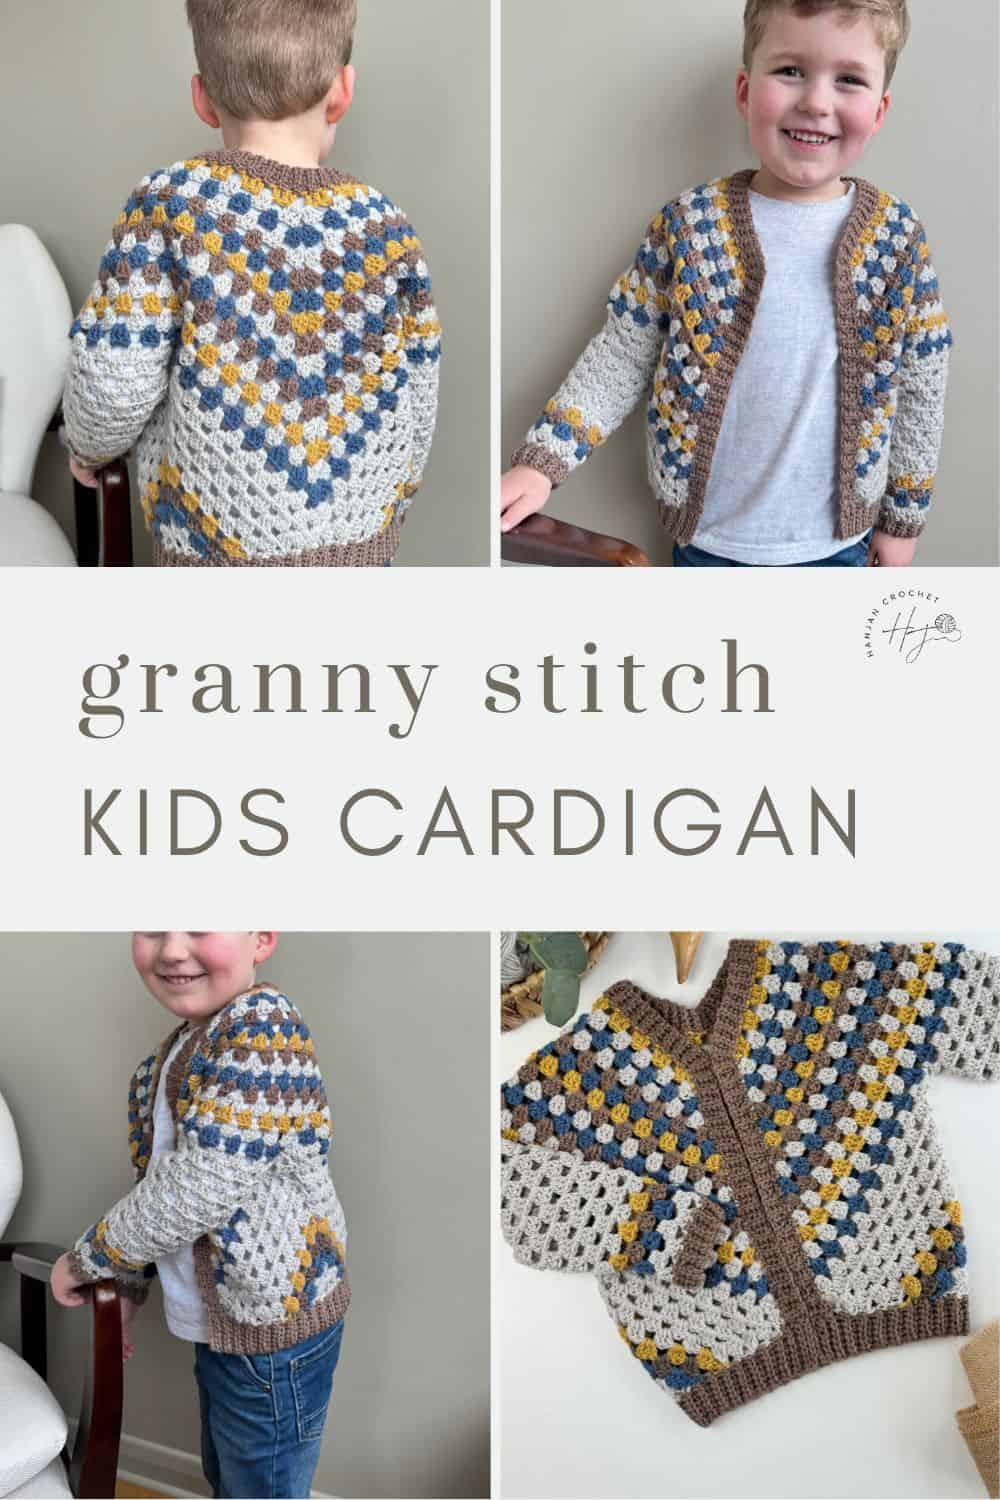 Granny stitch kids cardigan.